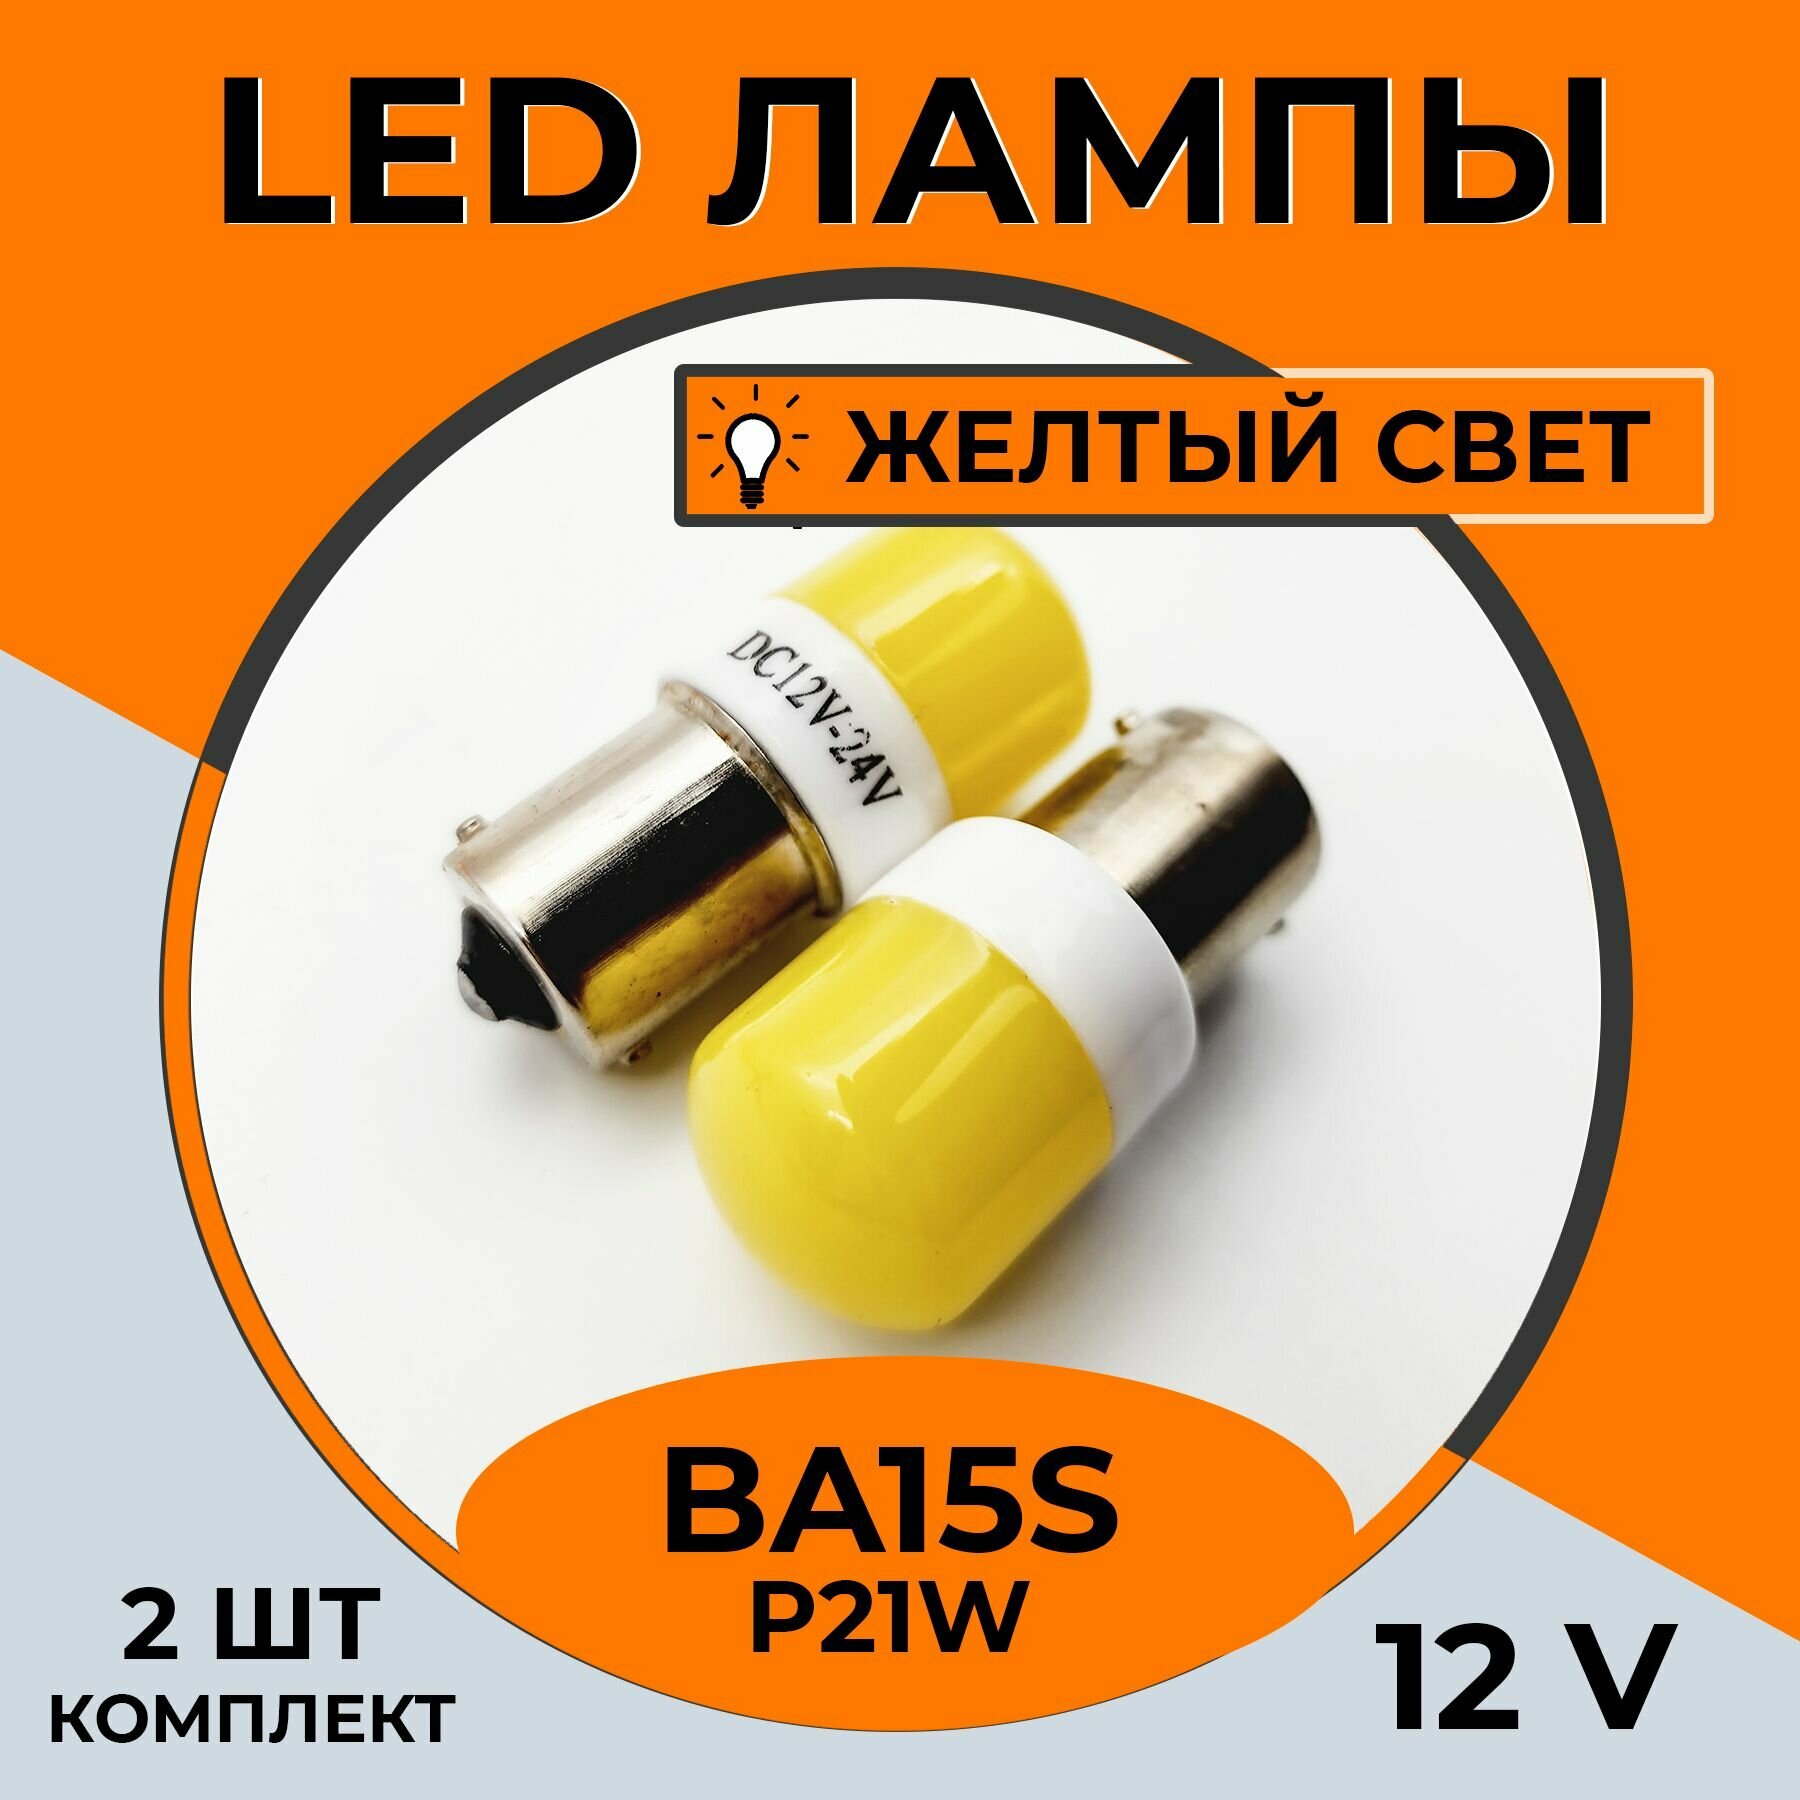 Автомобильная светодиодная LED лампа BA15s P21W для габаритных огней, поворотника 12в желтый свет, 2 шт